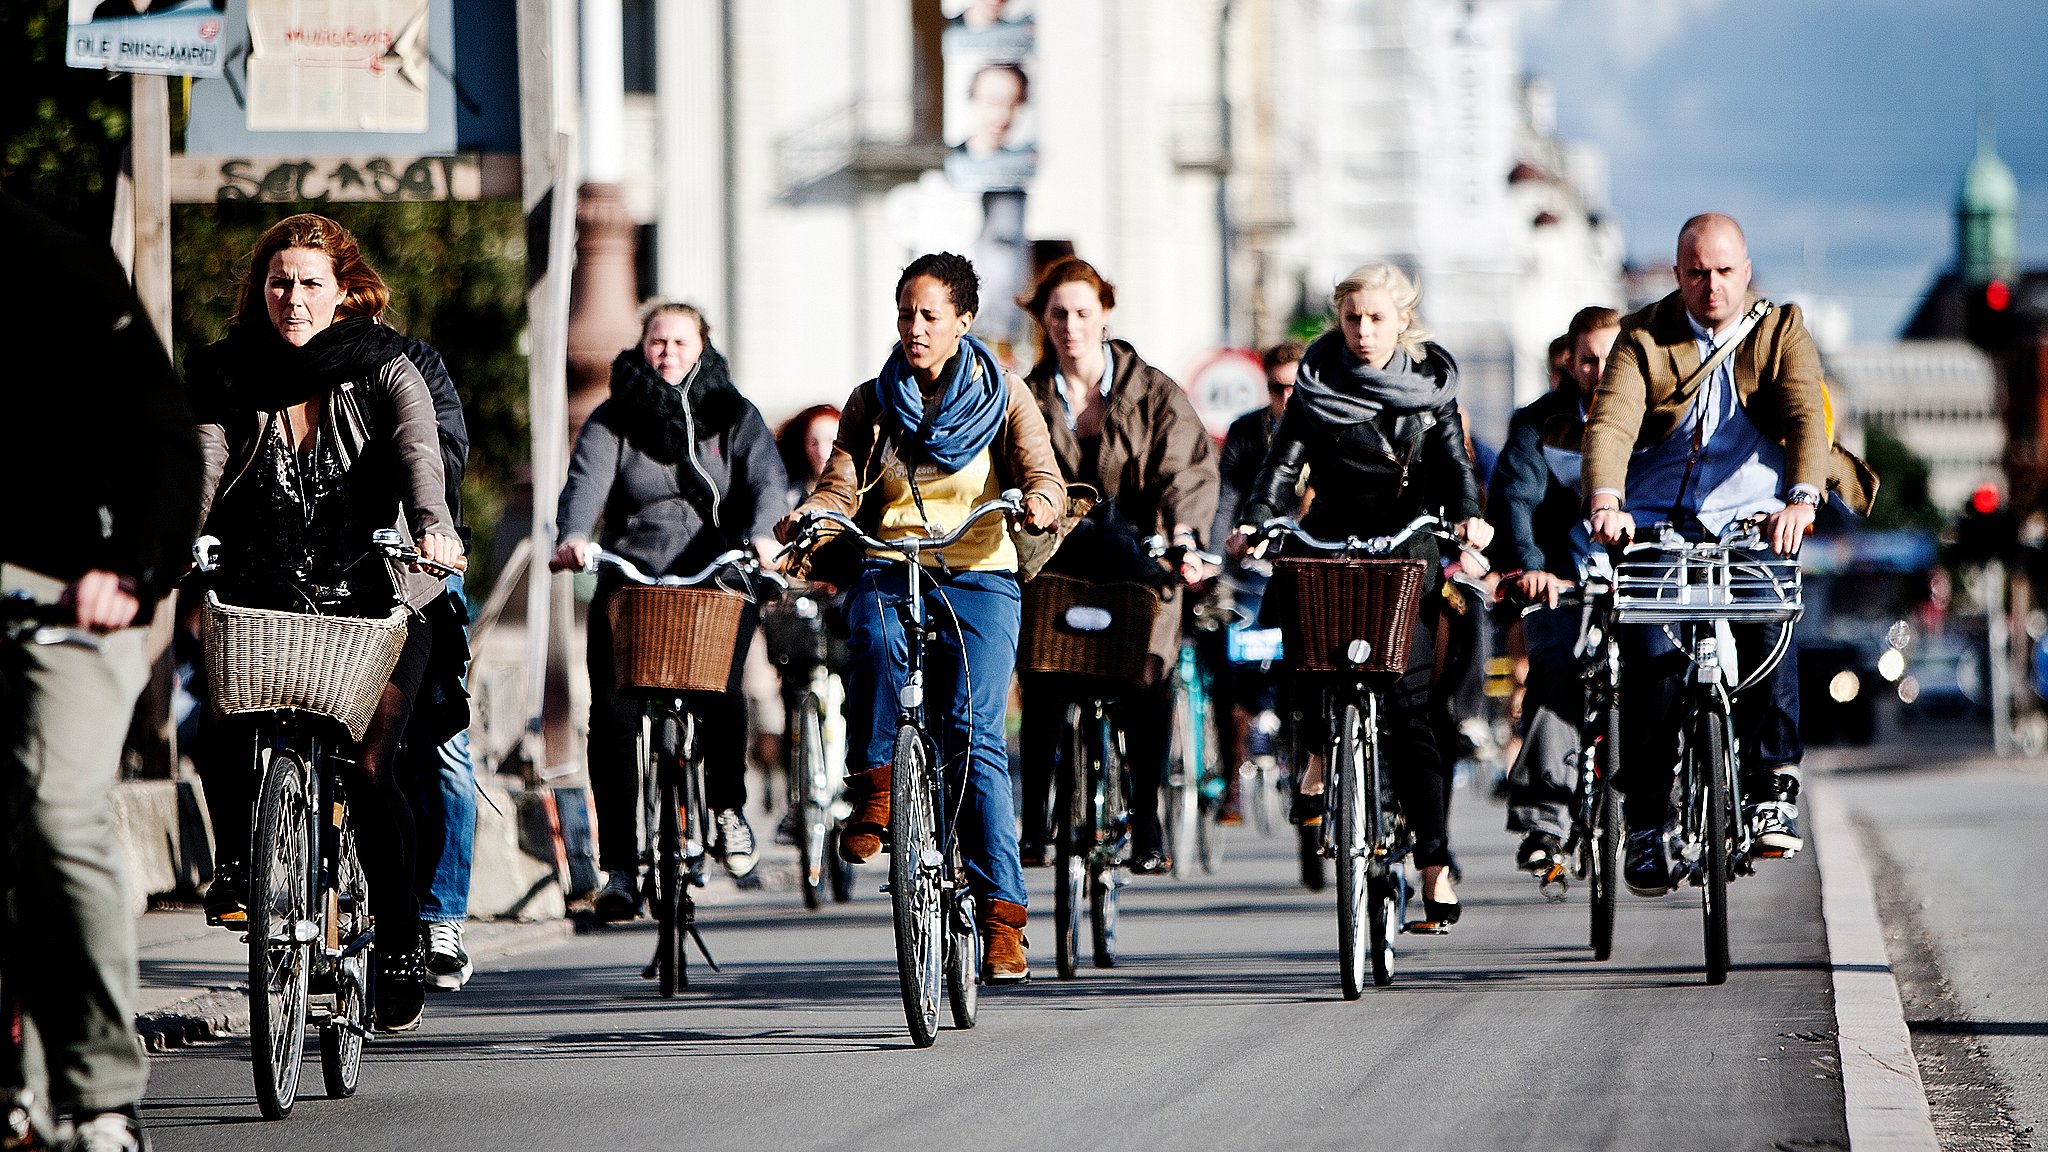 forbundet Bunke af Skylight Derfor deler politiet særlige net ud til cyklister i København | TV 2  Kosmopol